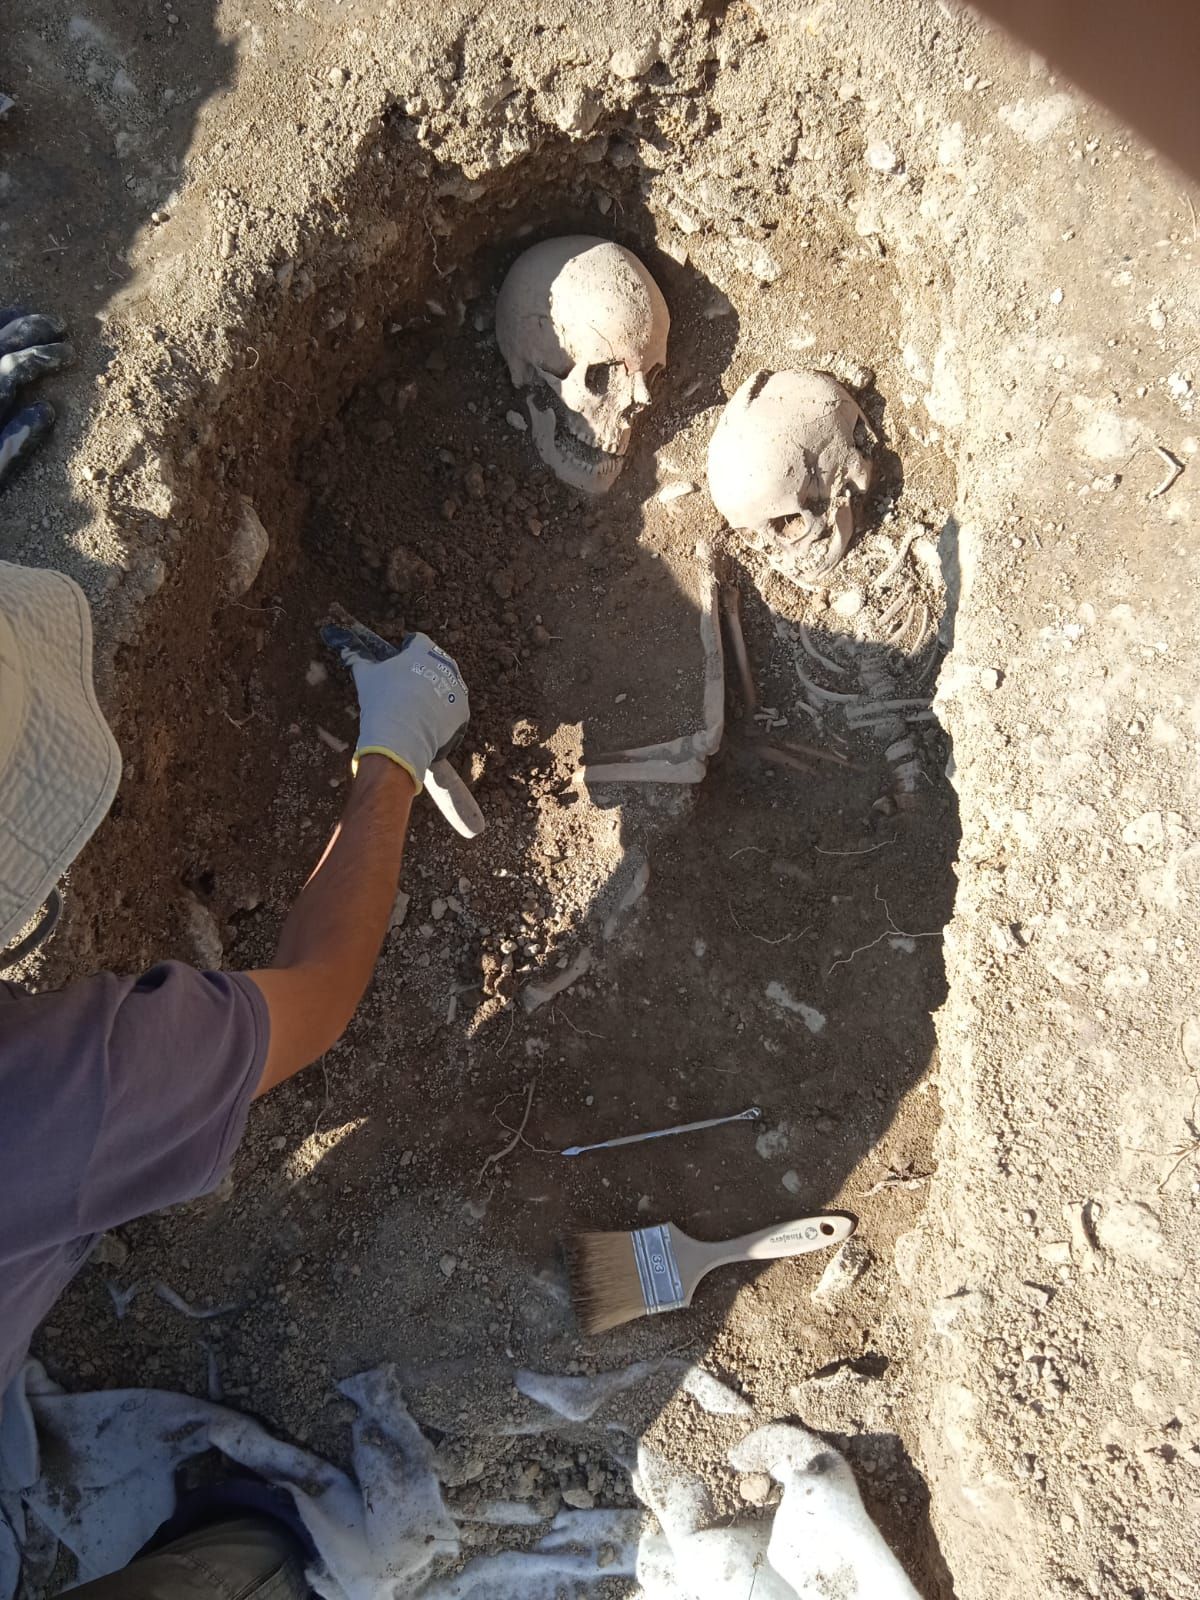 Imagen detallada de los restos humanos que han encontrado en la localidad.